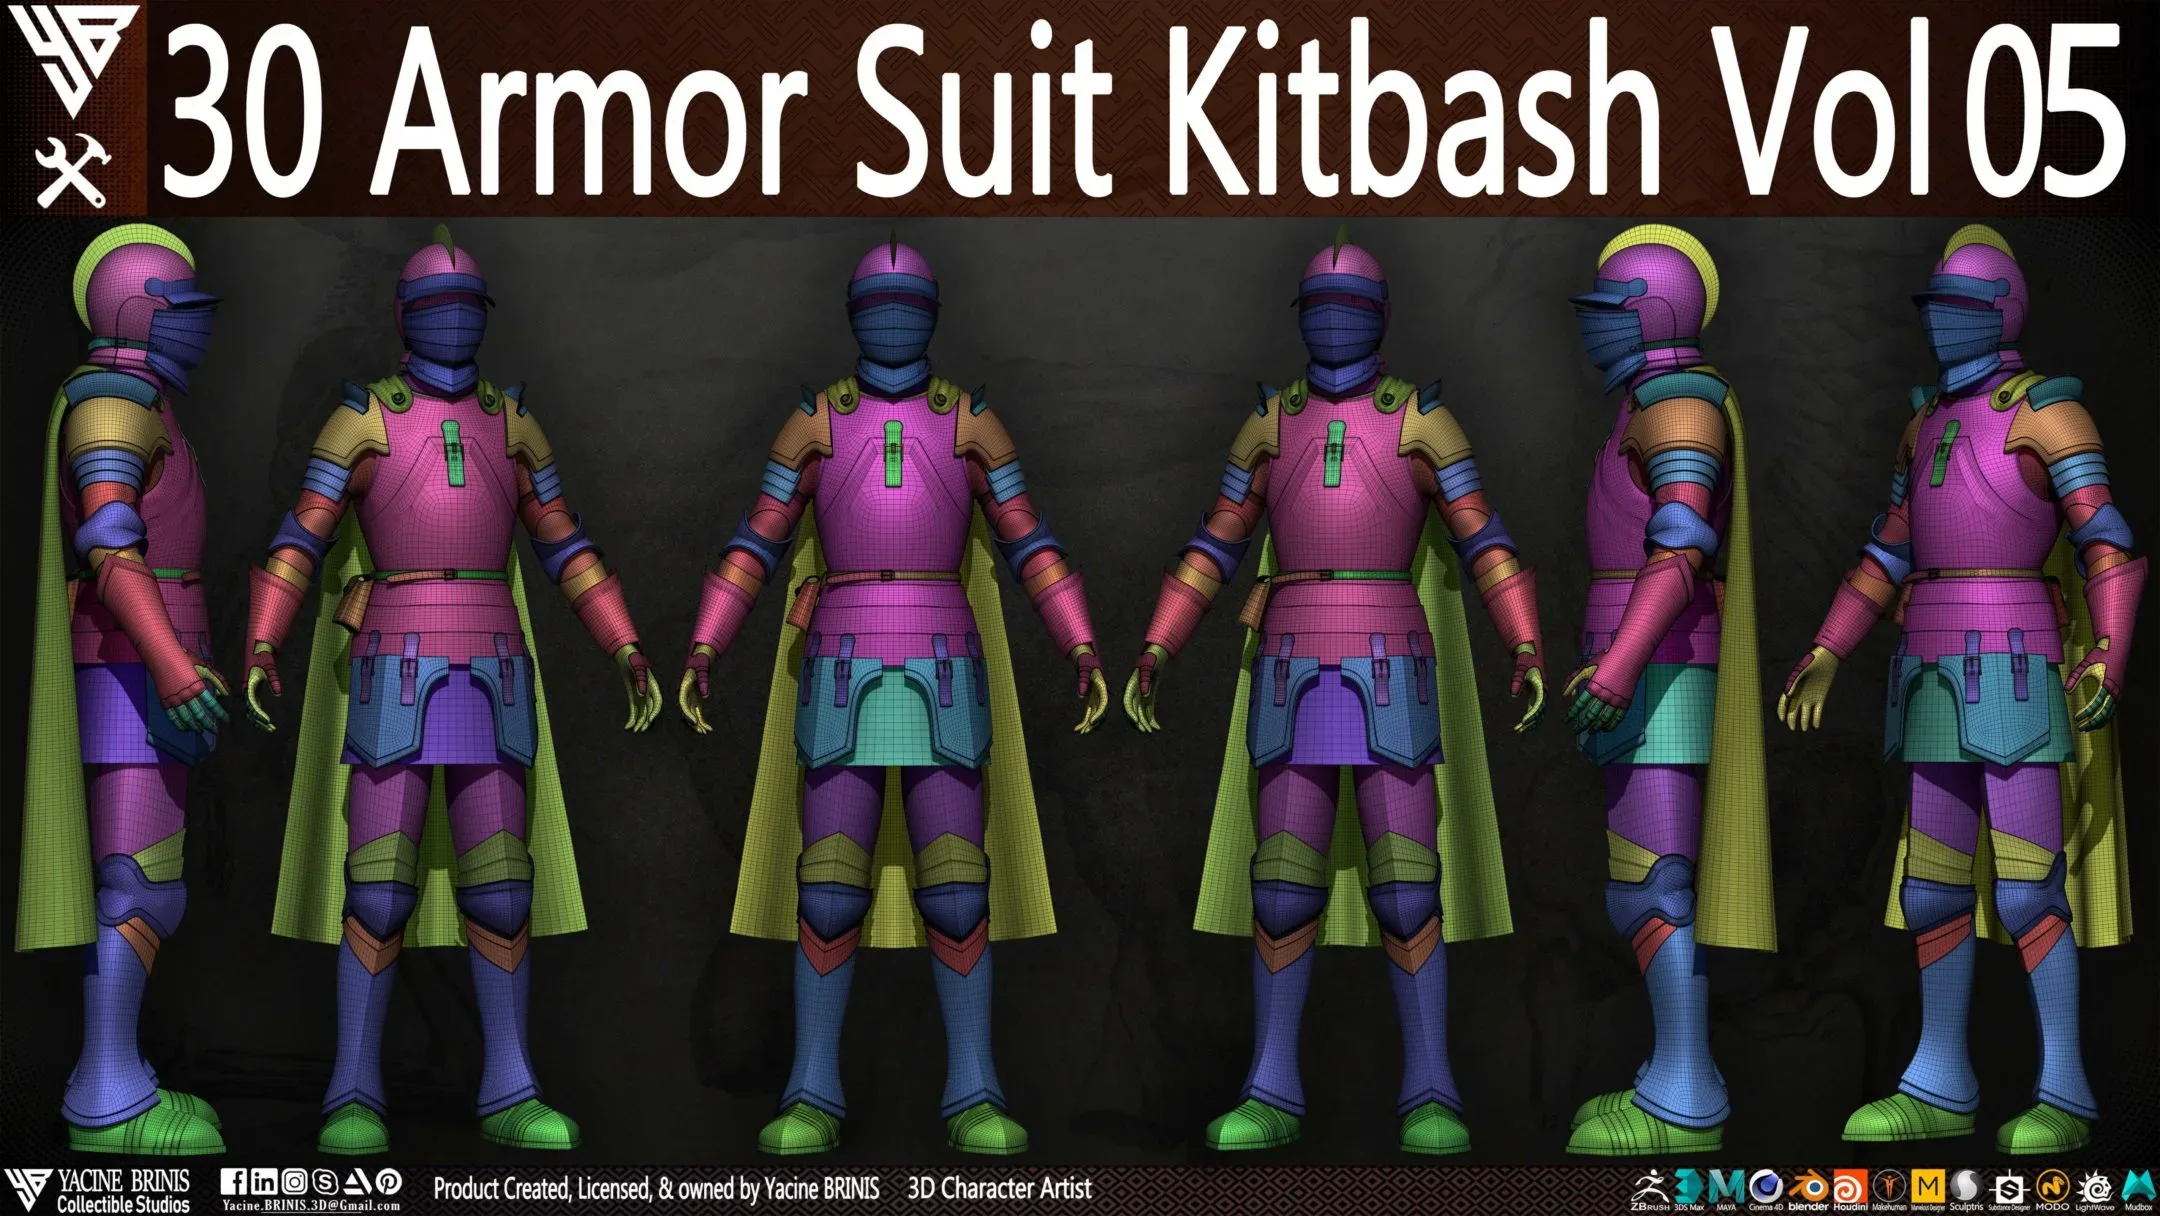 30 Armor Suit Kitbash Vol 05